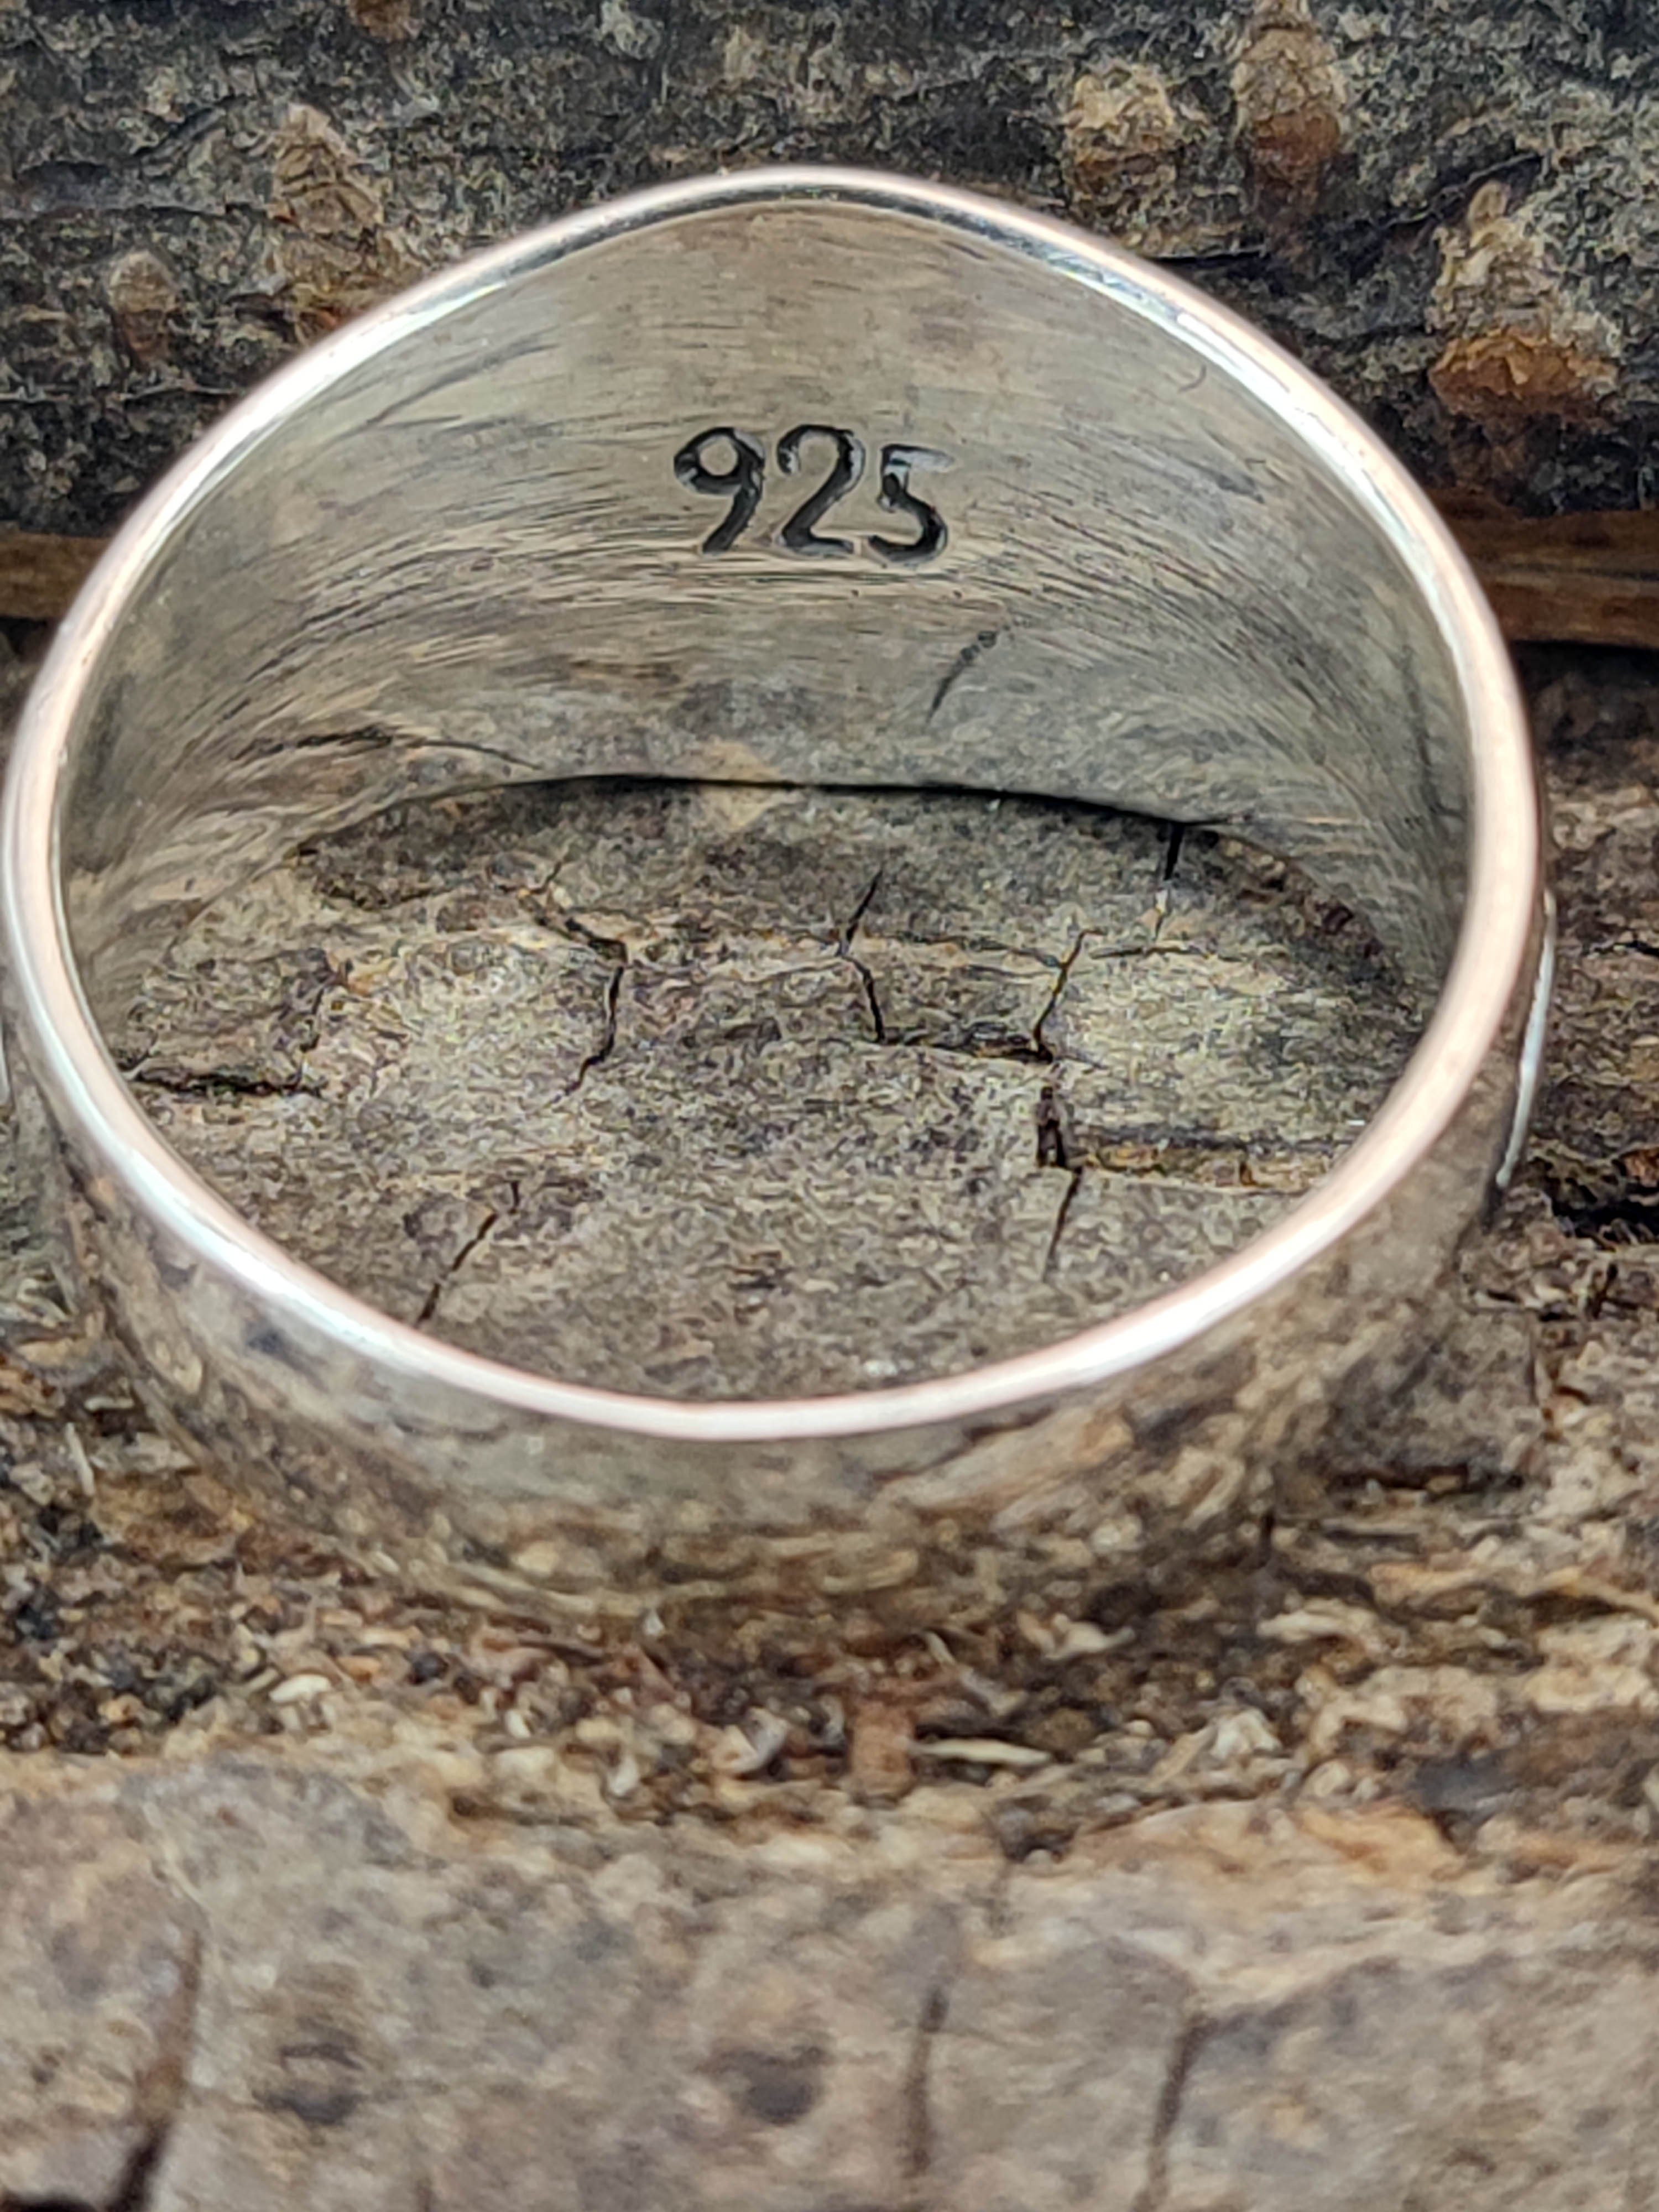 Gr. Leather of 925 Kiss Silberring keltische Fingerring Dreier Ring 52-74 Triskele Spirale